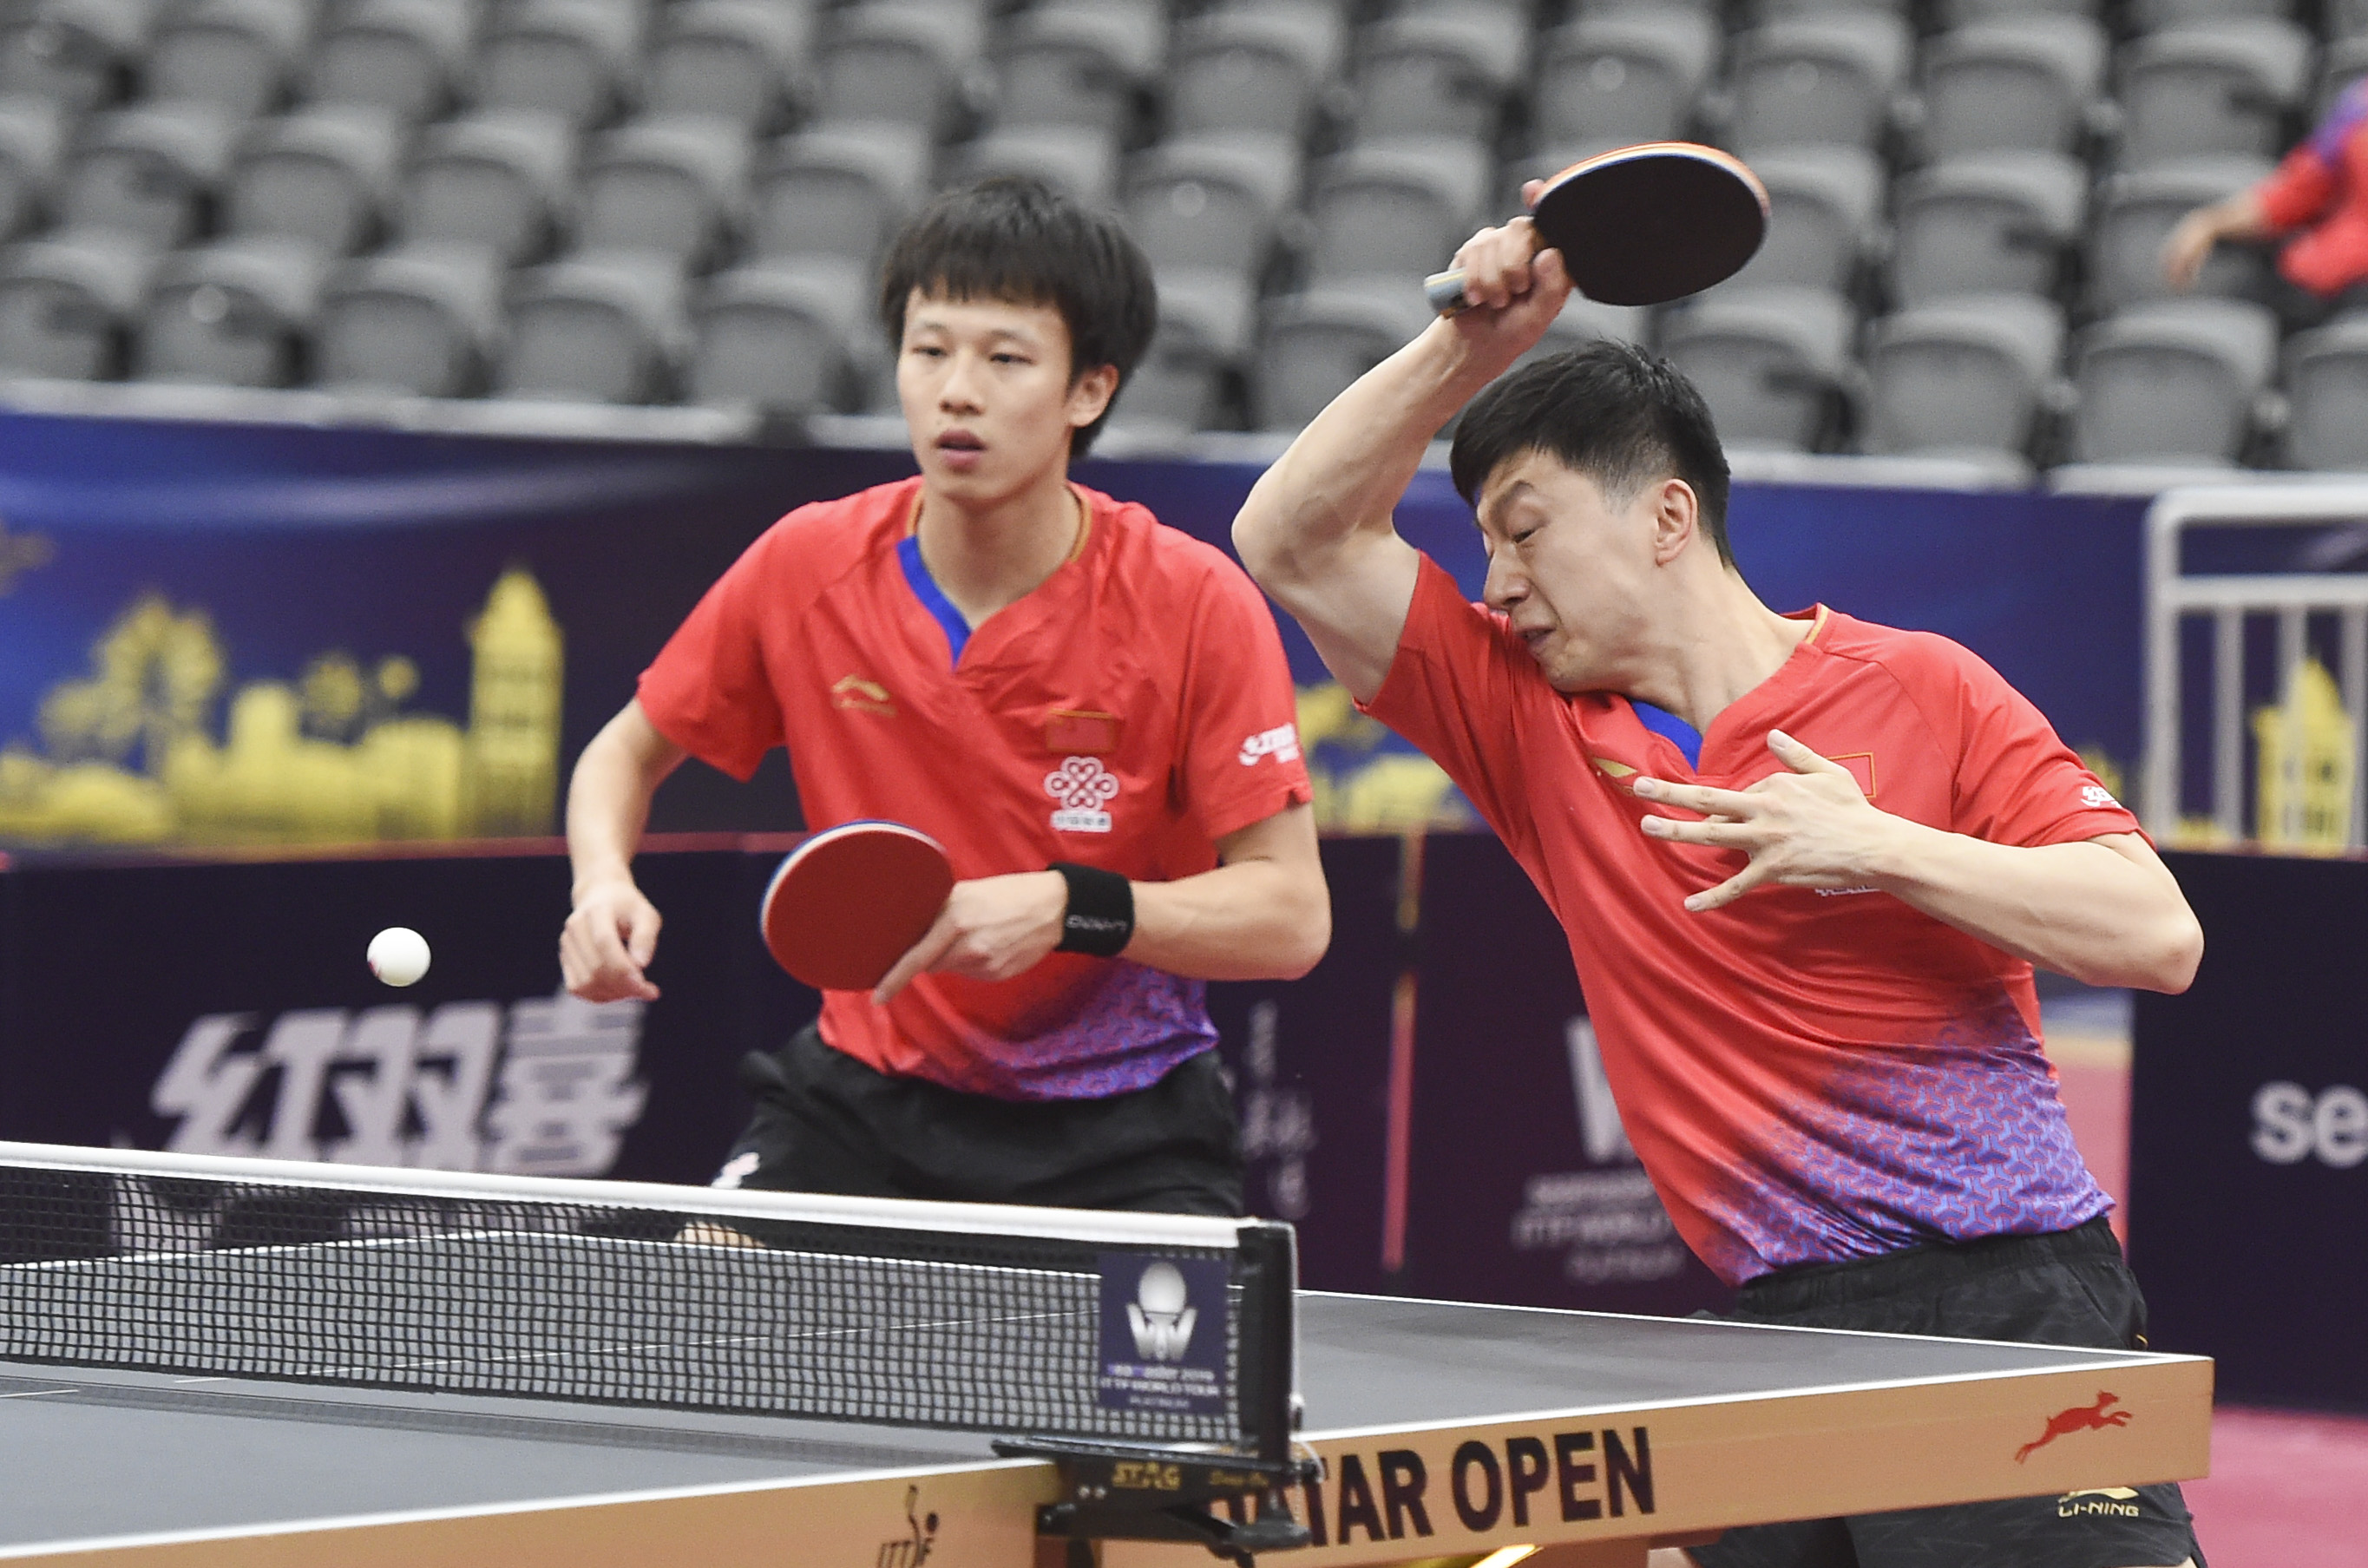 当日,在2019年国际乒联世界巡回赛卡塔尔公开赛男双首轮比赛中,中国